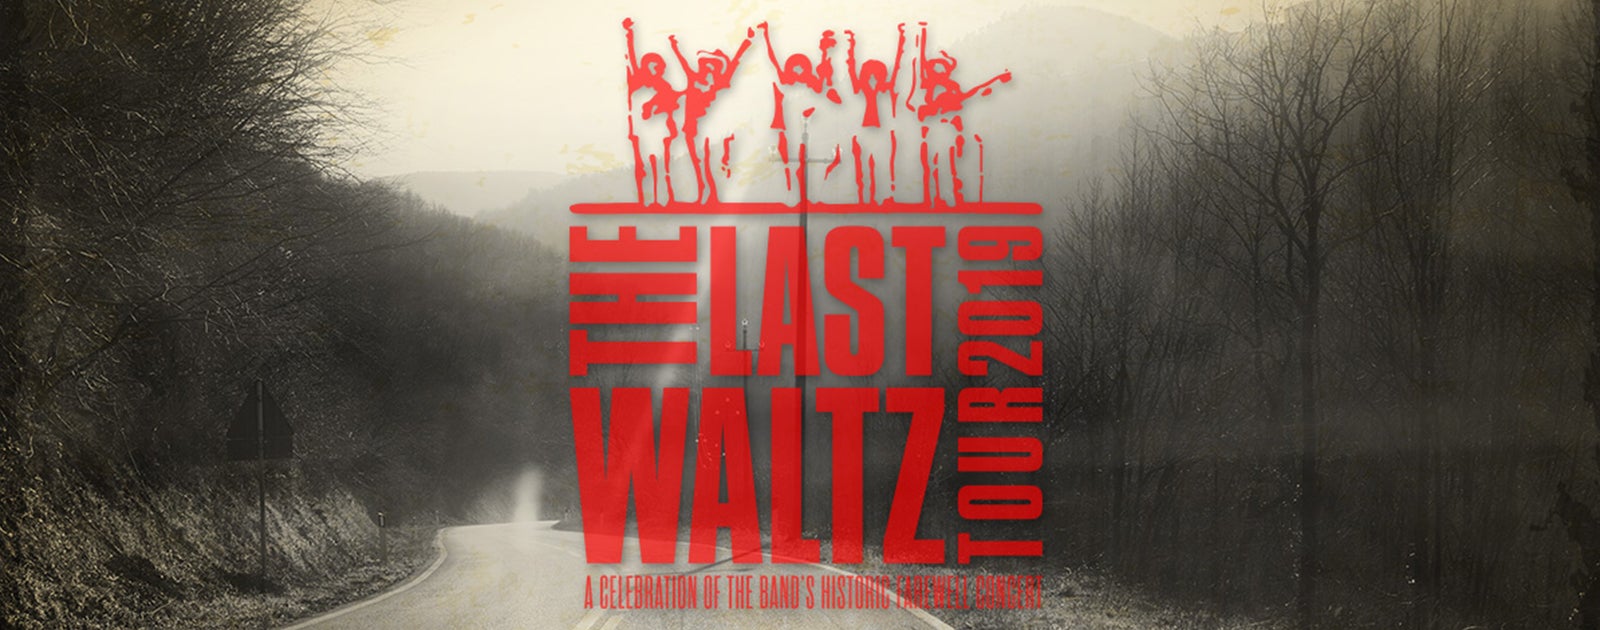 The Last Waltz Tour